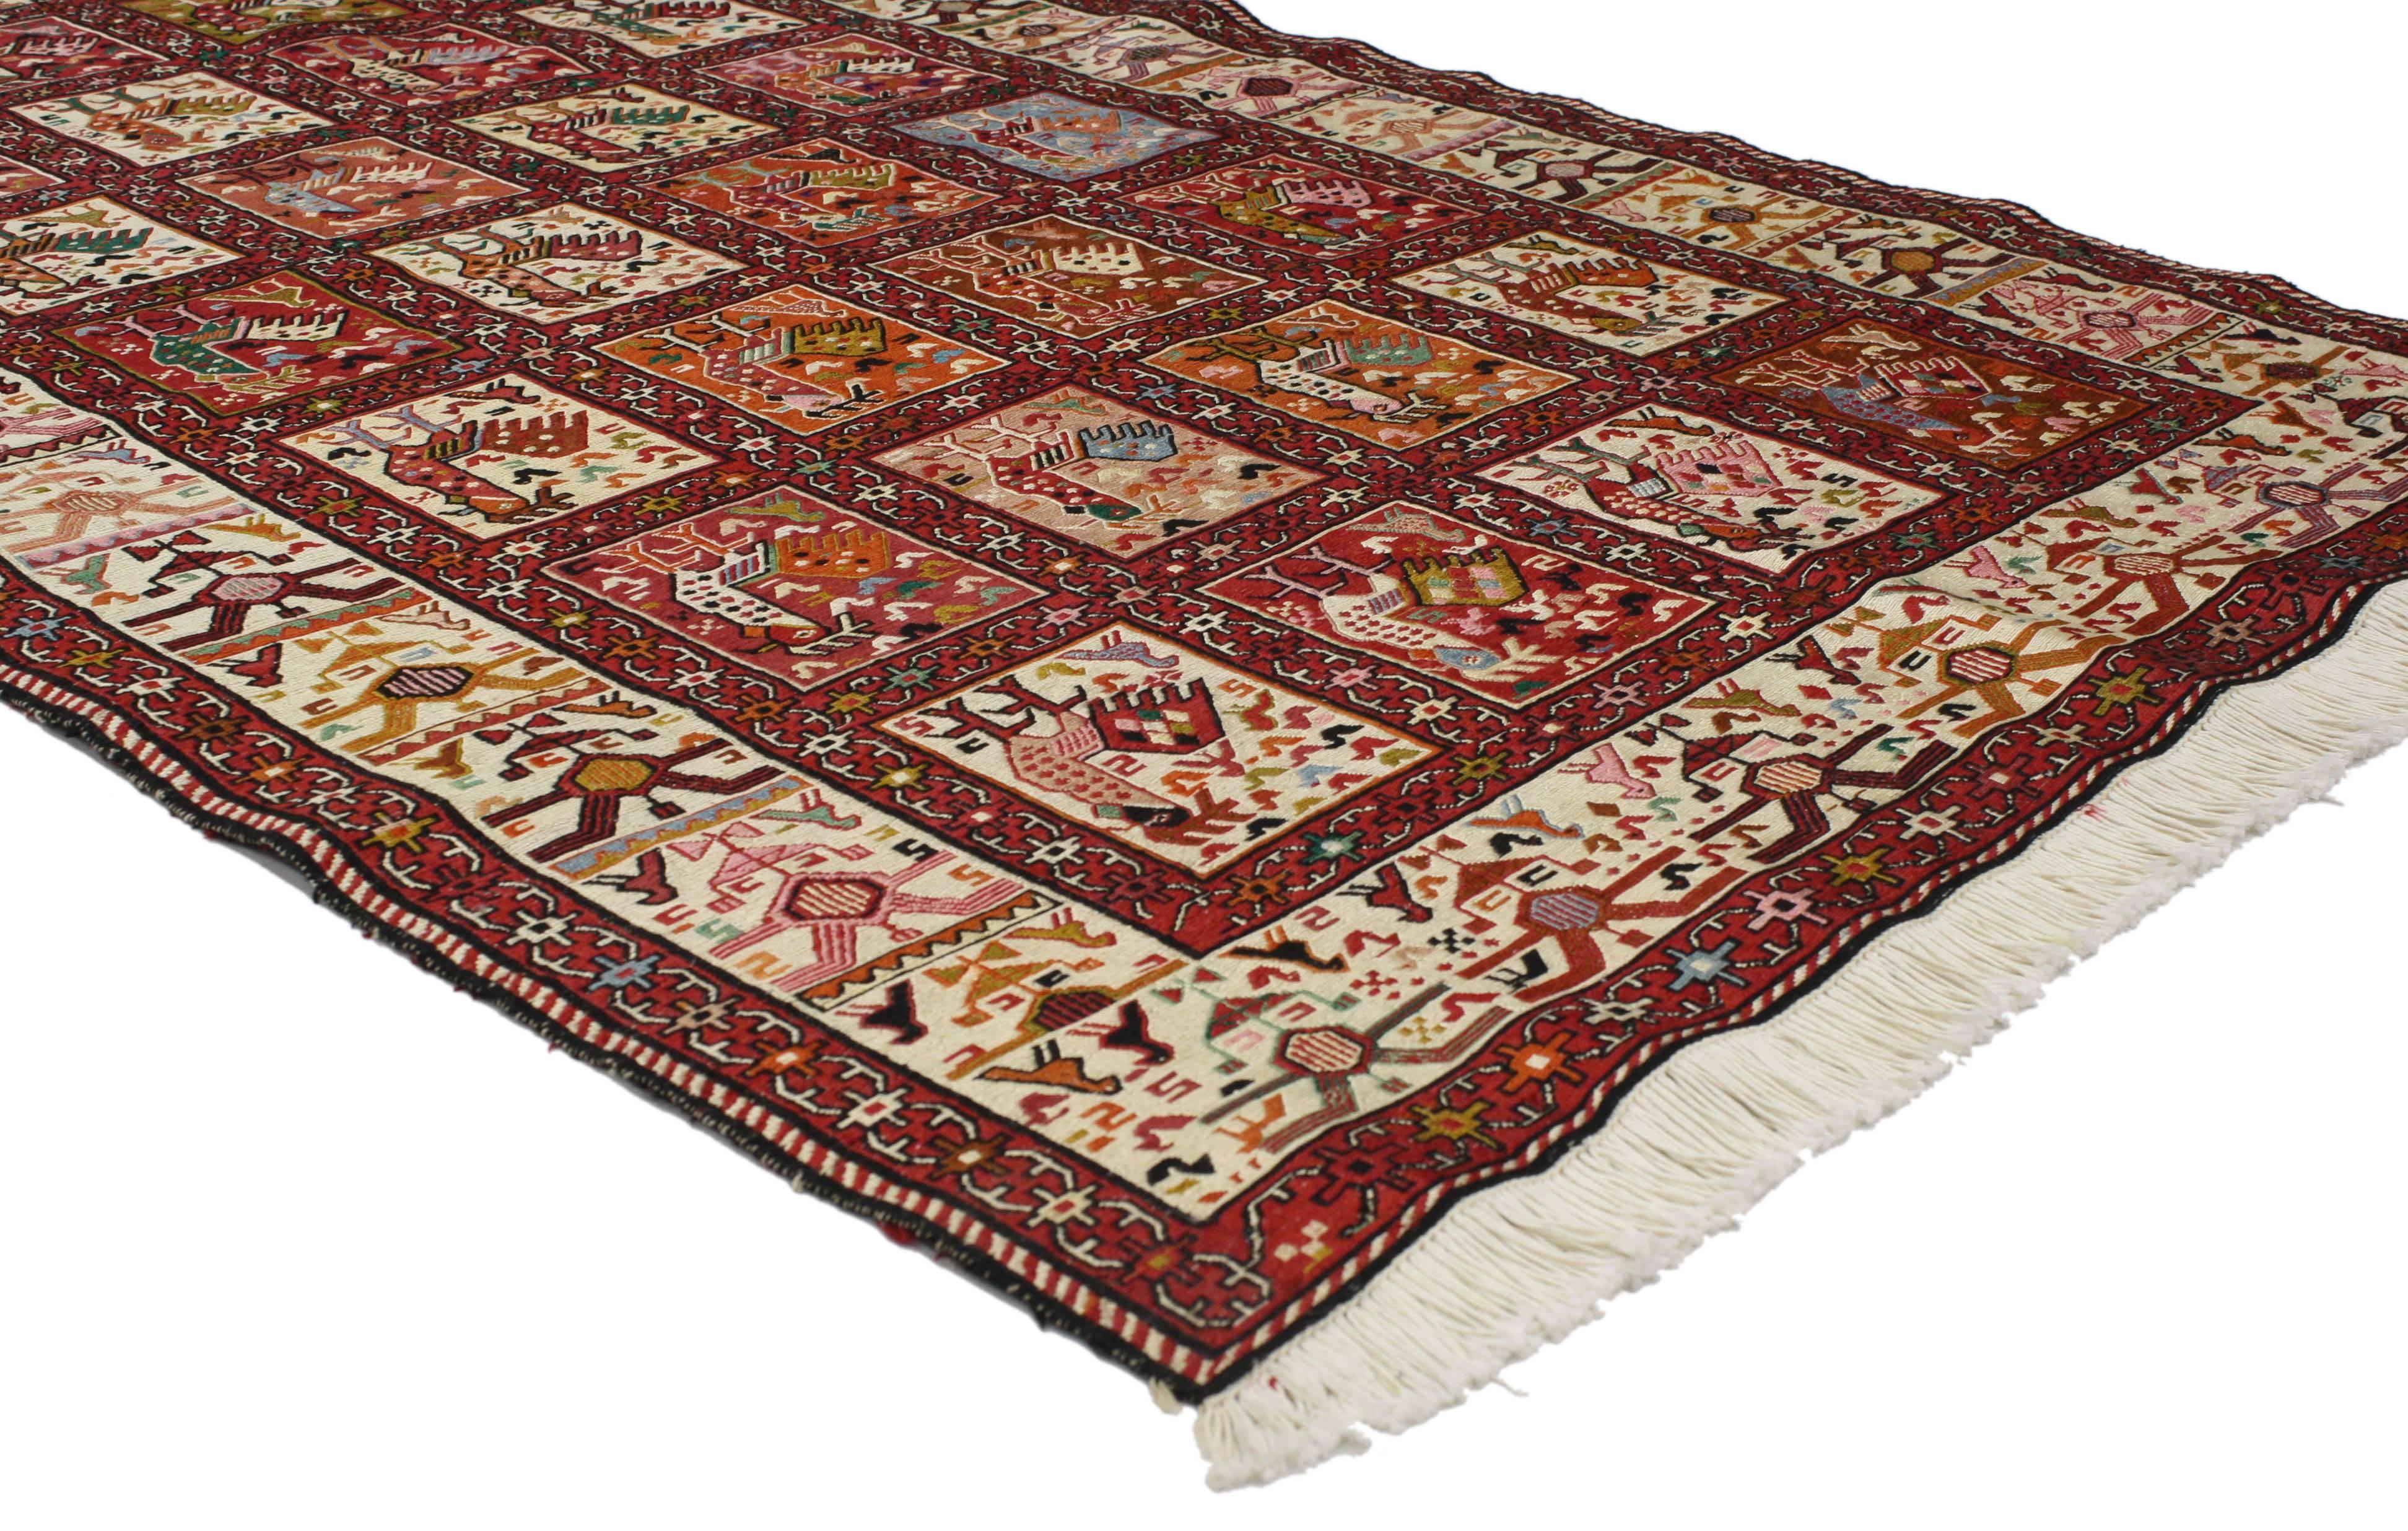 76997 Tapis persan Soumak vintage, tapis de coqs à tissage plat. Avec son charme nomade et son style tribal, ce tapis persan Soumak vintage de style tribal est une pièce d'apparat saisissante. Tissé à la main en laine, ce tapis Soumak Rooster à